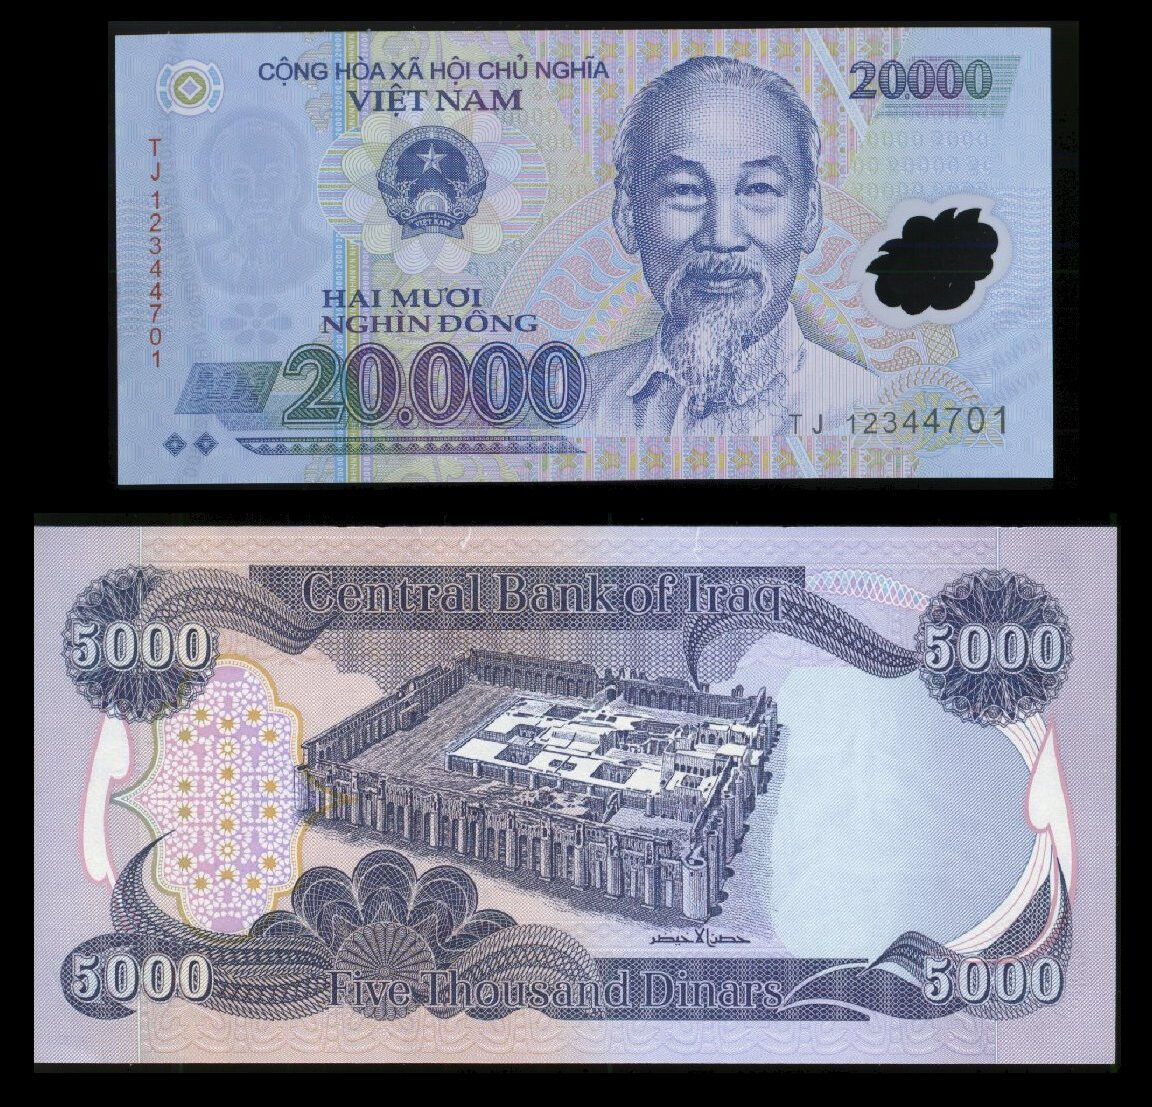 5000 Iraq Dinar + A Free 20,000 Vietnam Dong W/ Dinar Purchase 